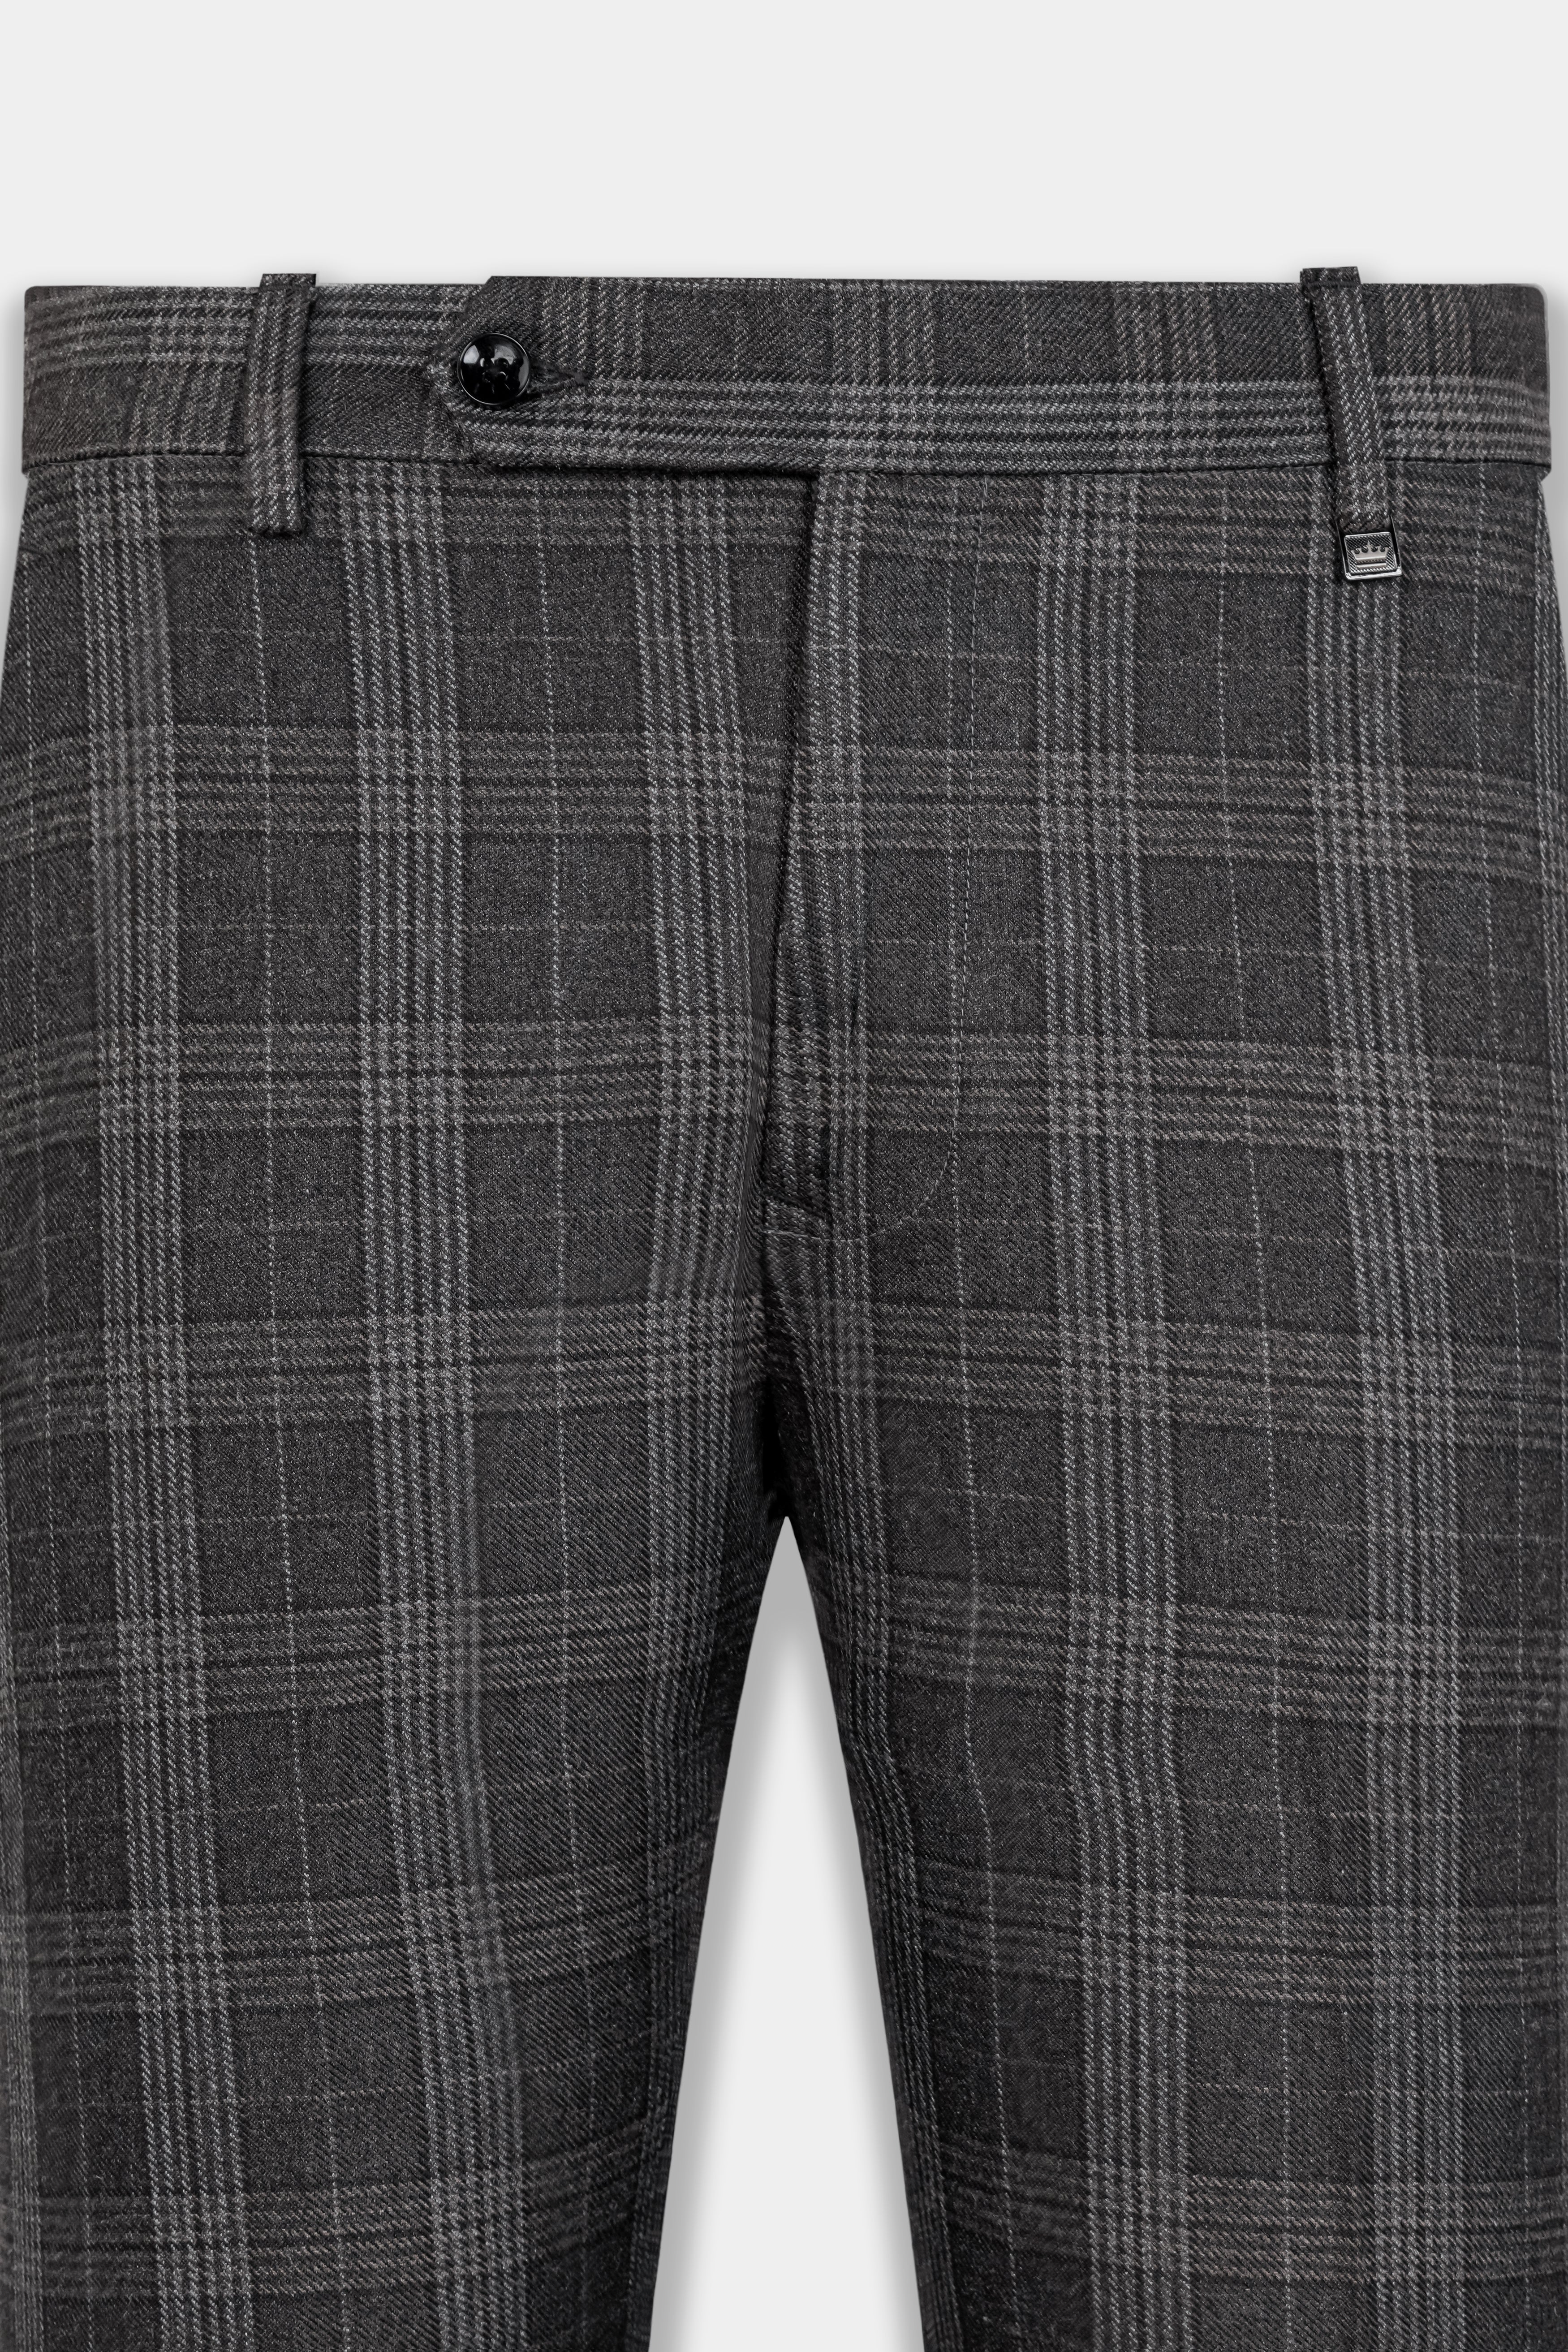 Fleece Lined Pants Cashmere for Women Plaid Korean Japan Trousers